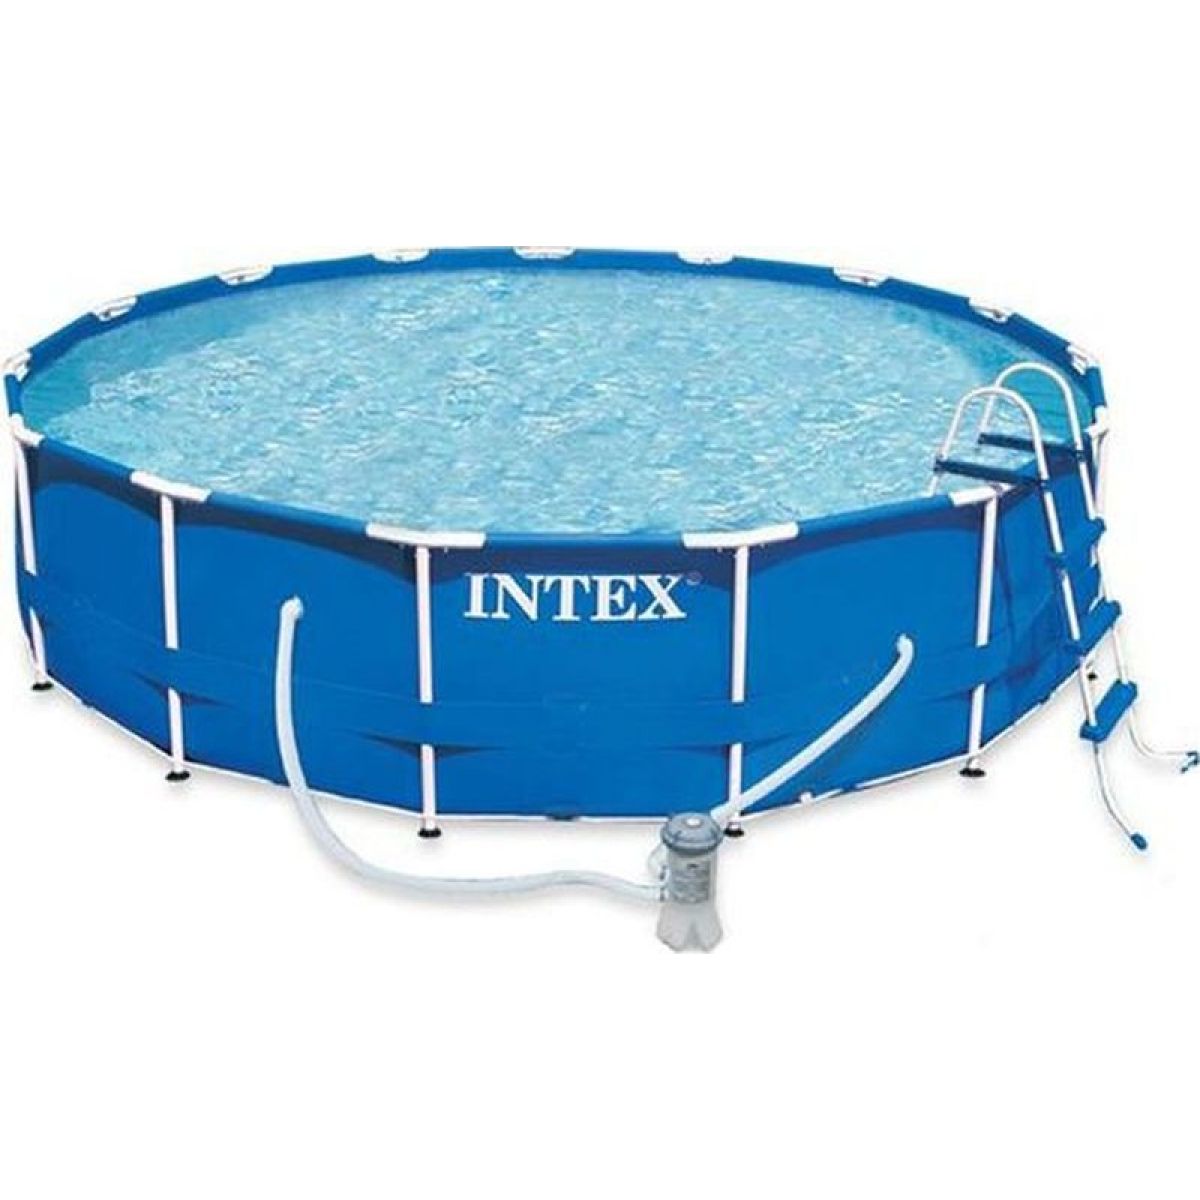 Intex 28234 Bazén kruhový s konstrukcí 457 x 107 cm